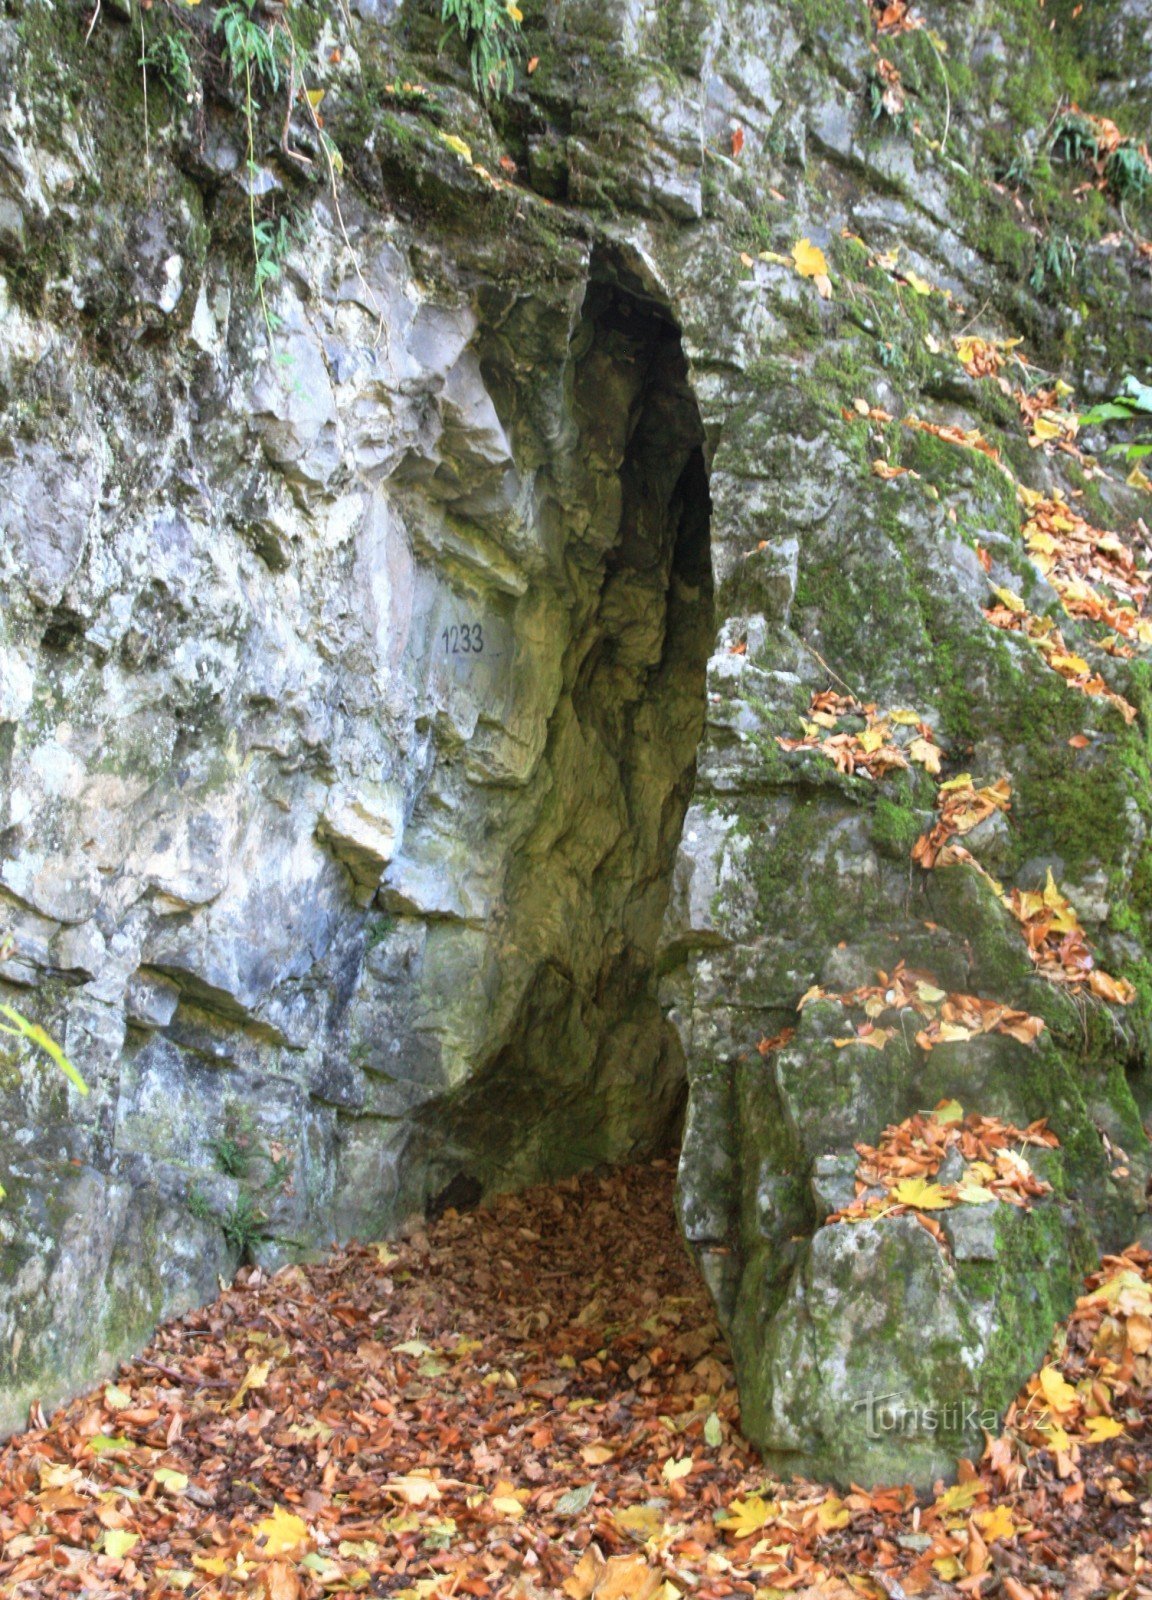 Az egyik másik barlang a Švýcárna felett, a Josefovské údolíban